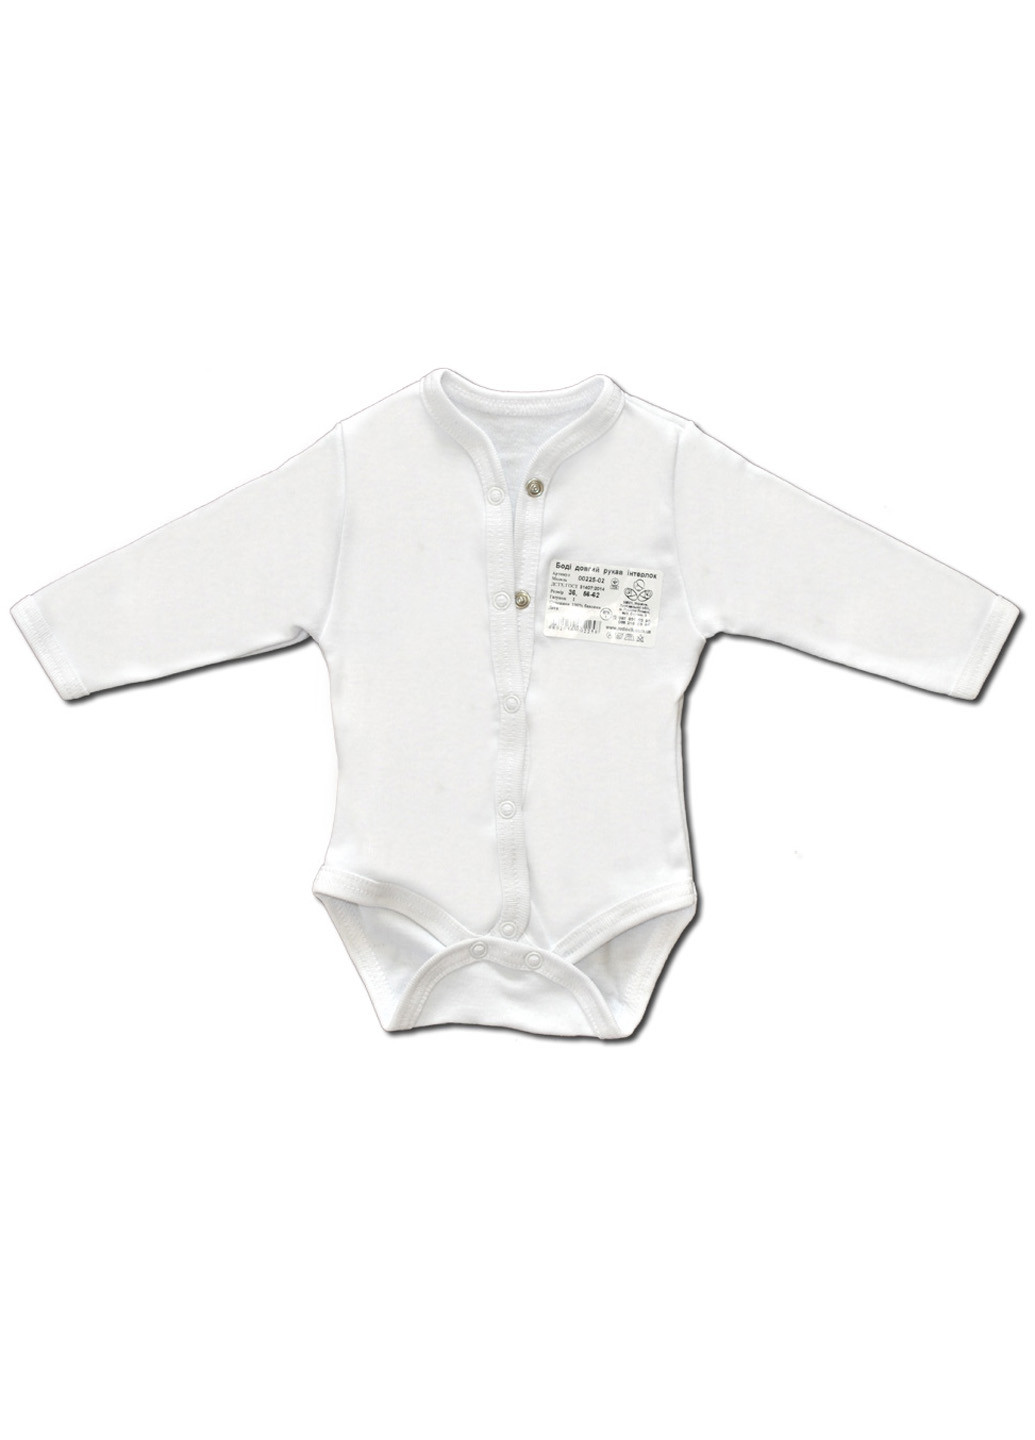 Белый демисезонный комплект одежды для малышей №8 (7предметов) тм коллекция капитошка белый Родовик комплект 08БХ